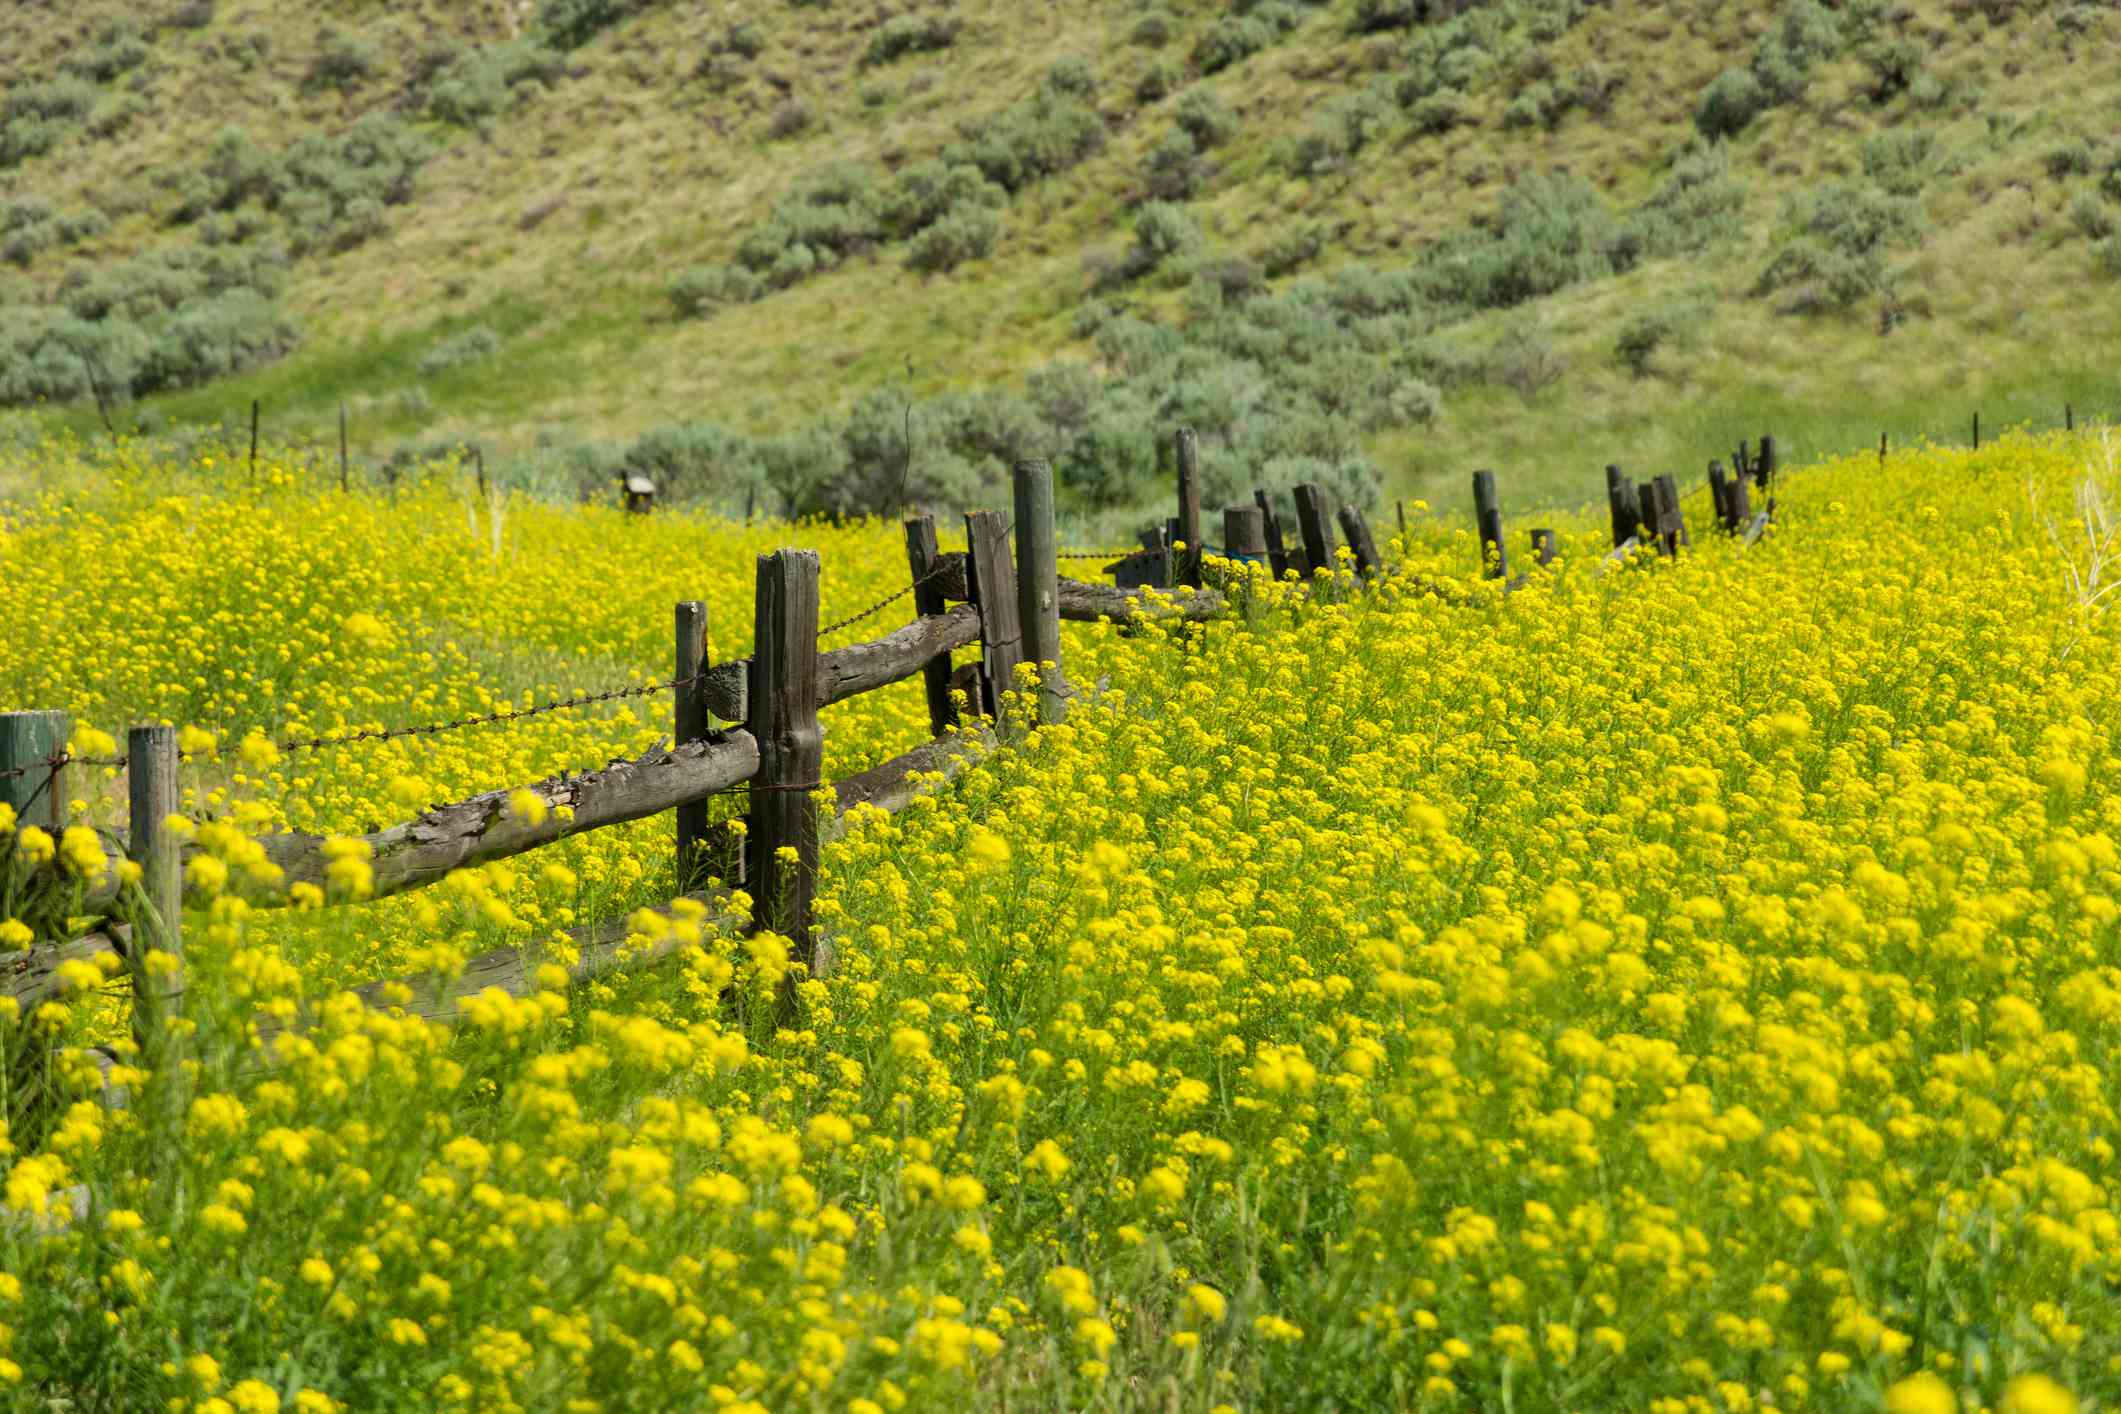 一片开着黄色花朵的芥菜田和一道木栅栏把田地隔开